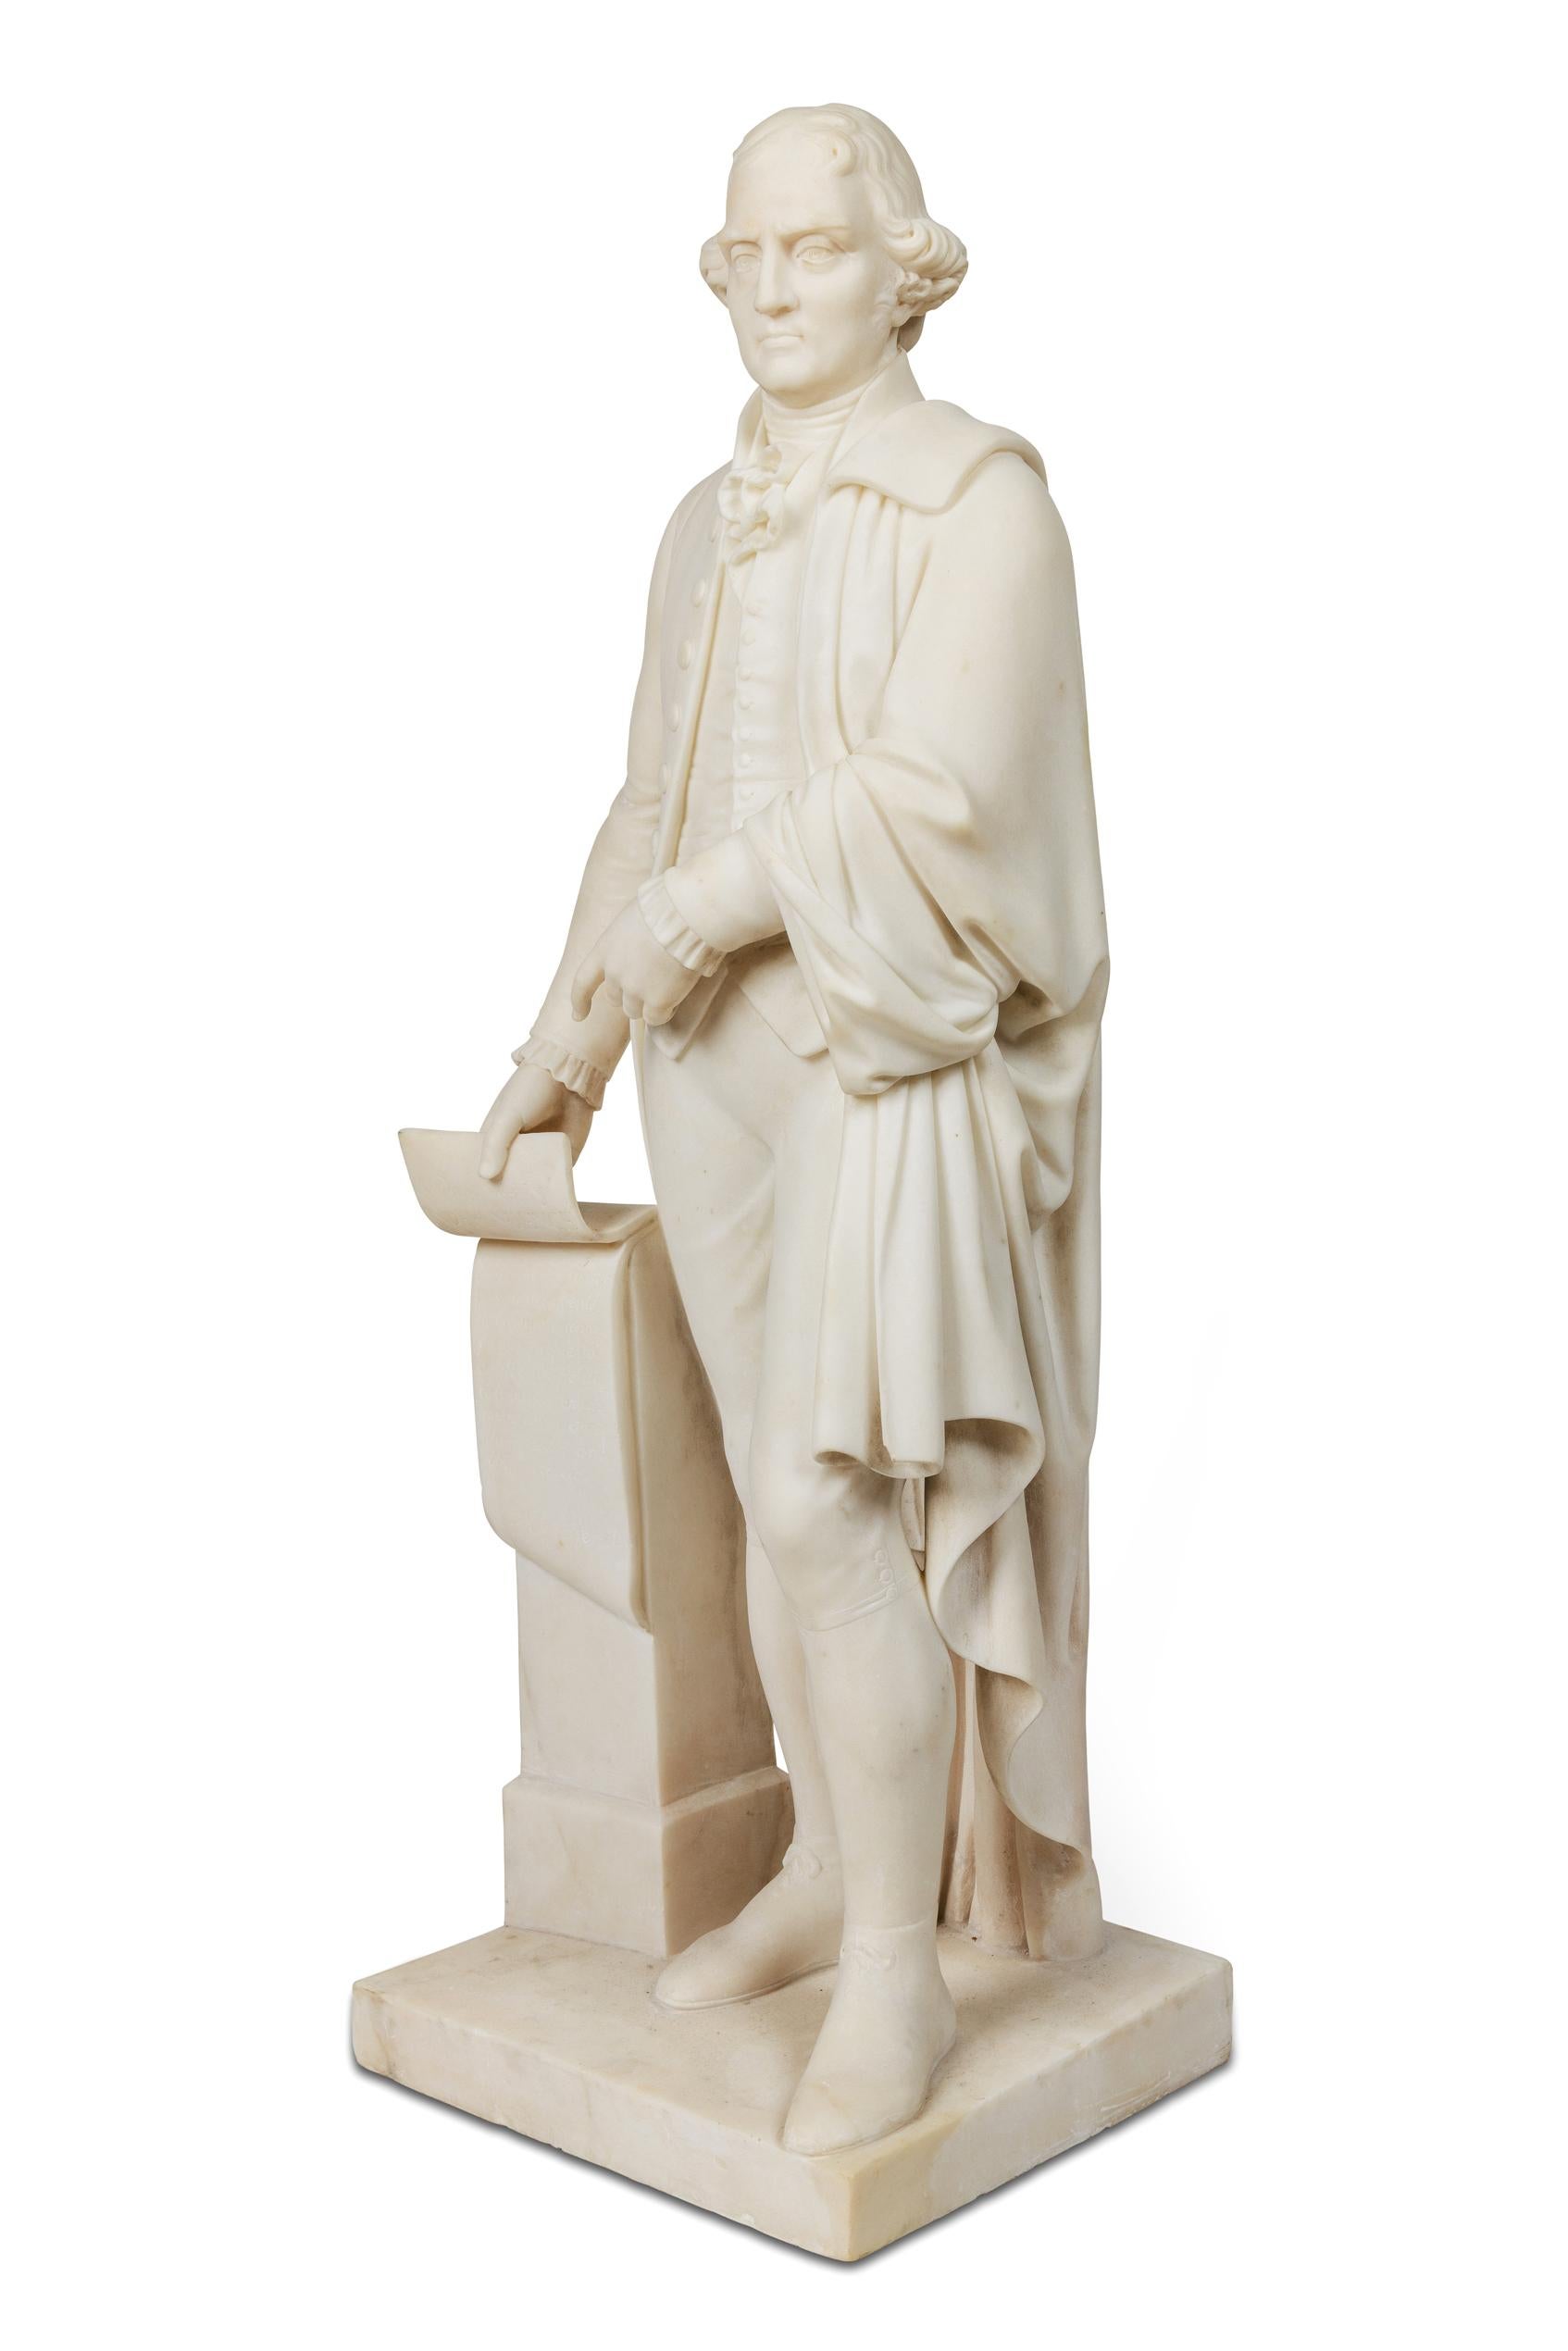 Rare et importante sculpture américaine en marbre blanc représentant Thomas Jefferson tenant la Déclaration d'indépendance. Vers 1870, à la manière d'Horatio Stone (1808 -1875).

Inscrit sur le parchemin : 'La déclaration d'indépendance, Il devient